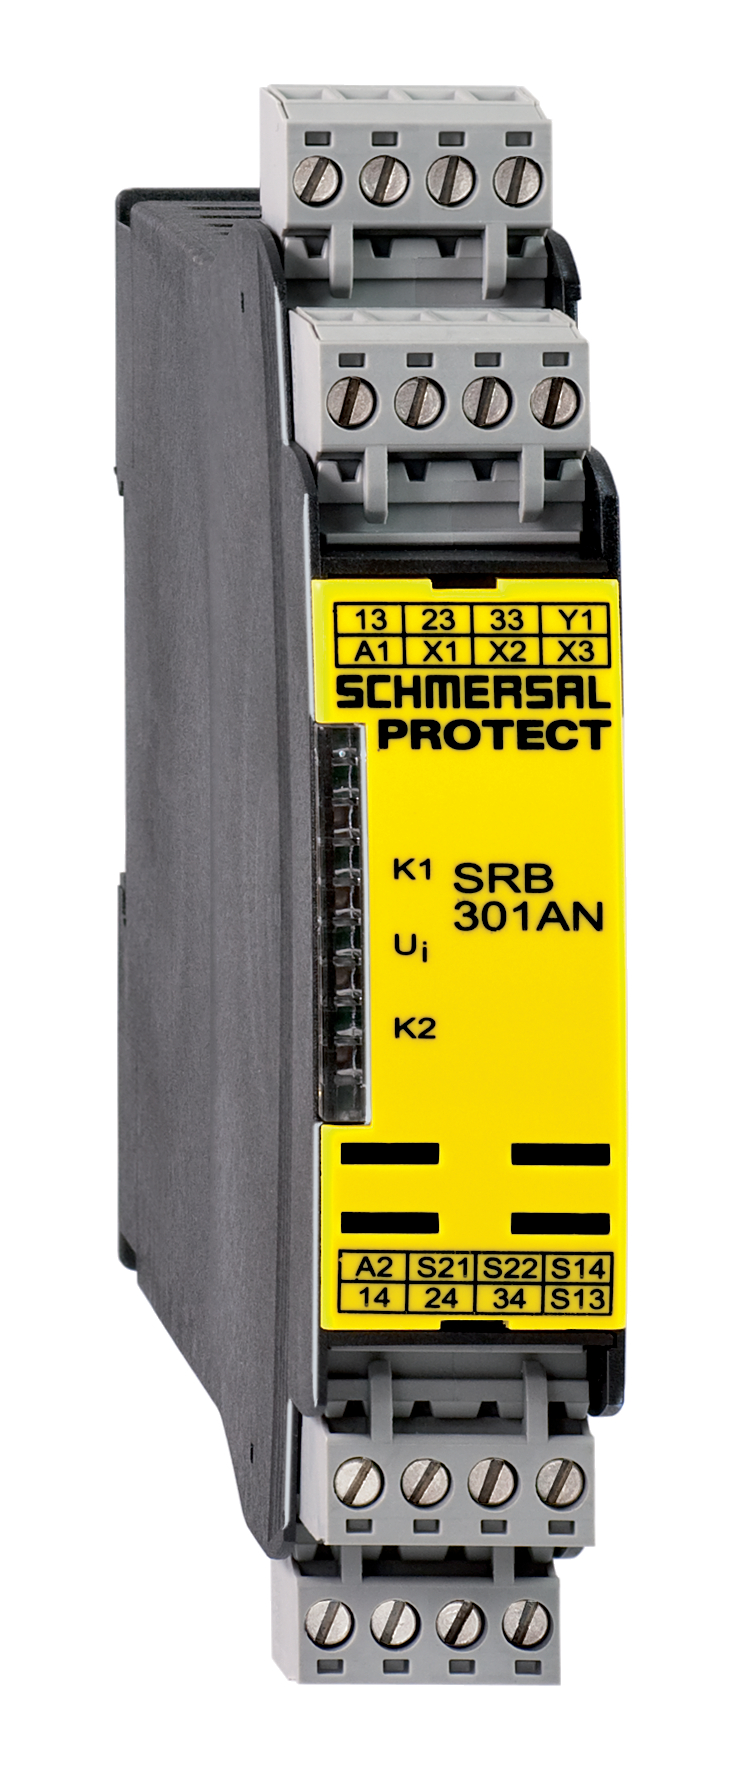 Safety relay SRB301HC/T-230V Schmersal 101190595